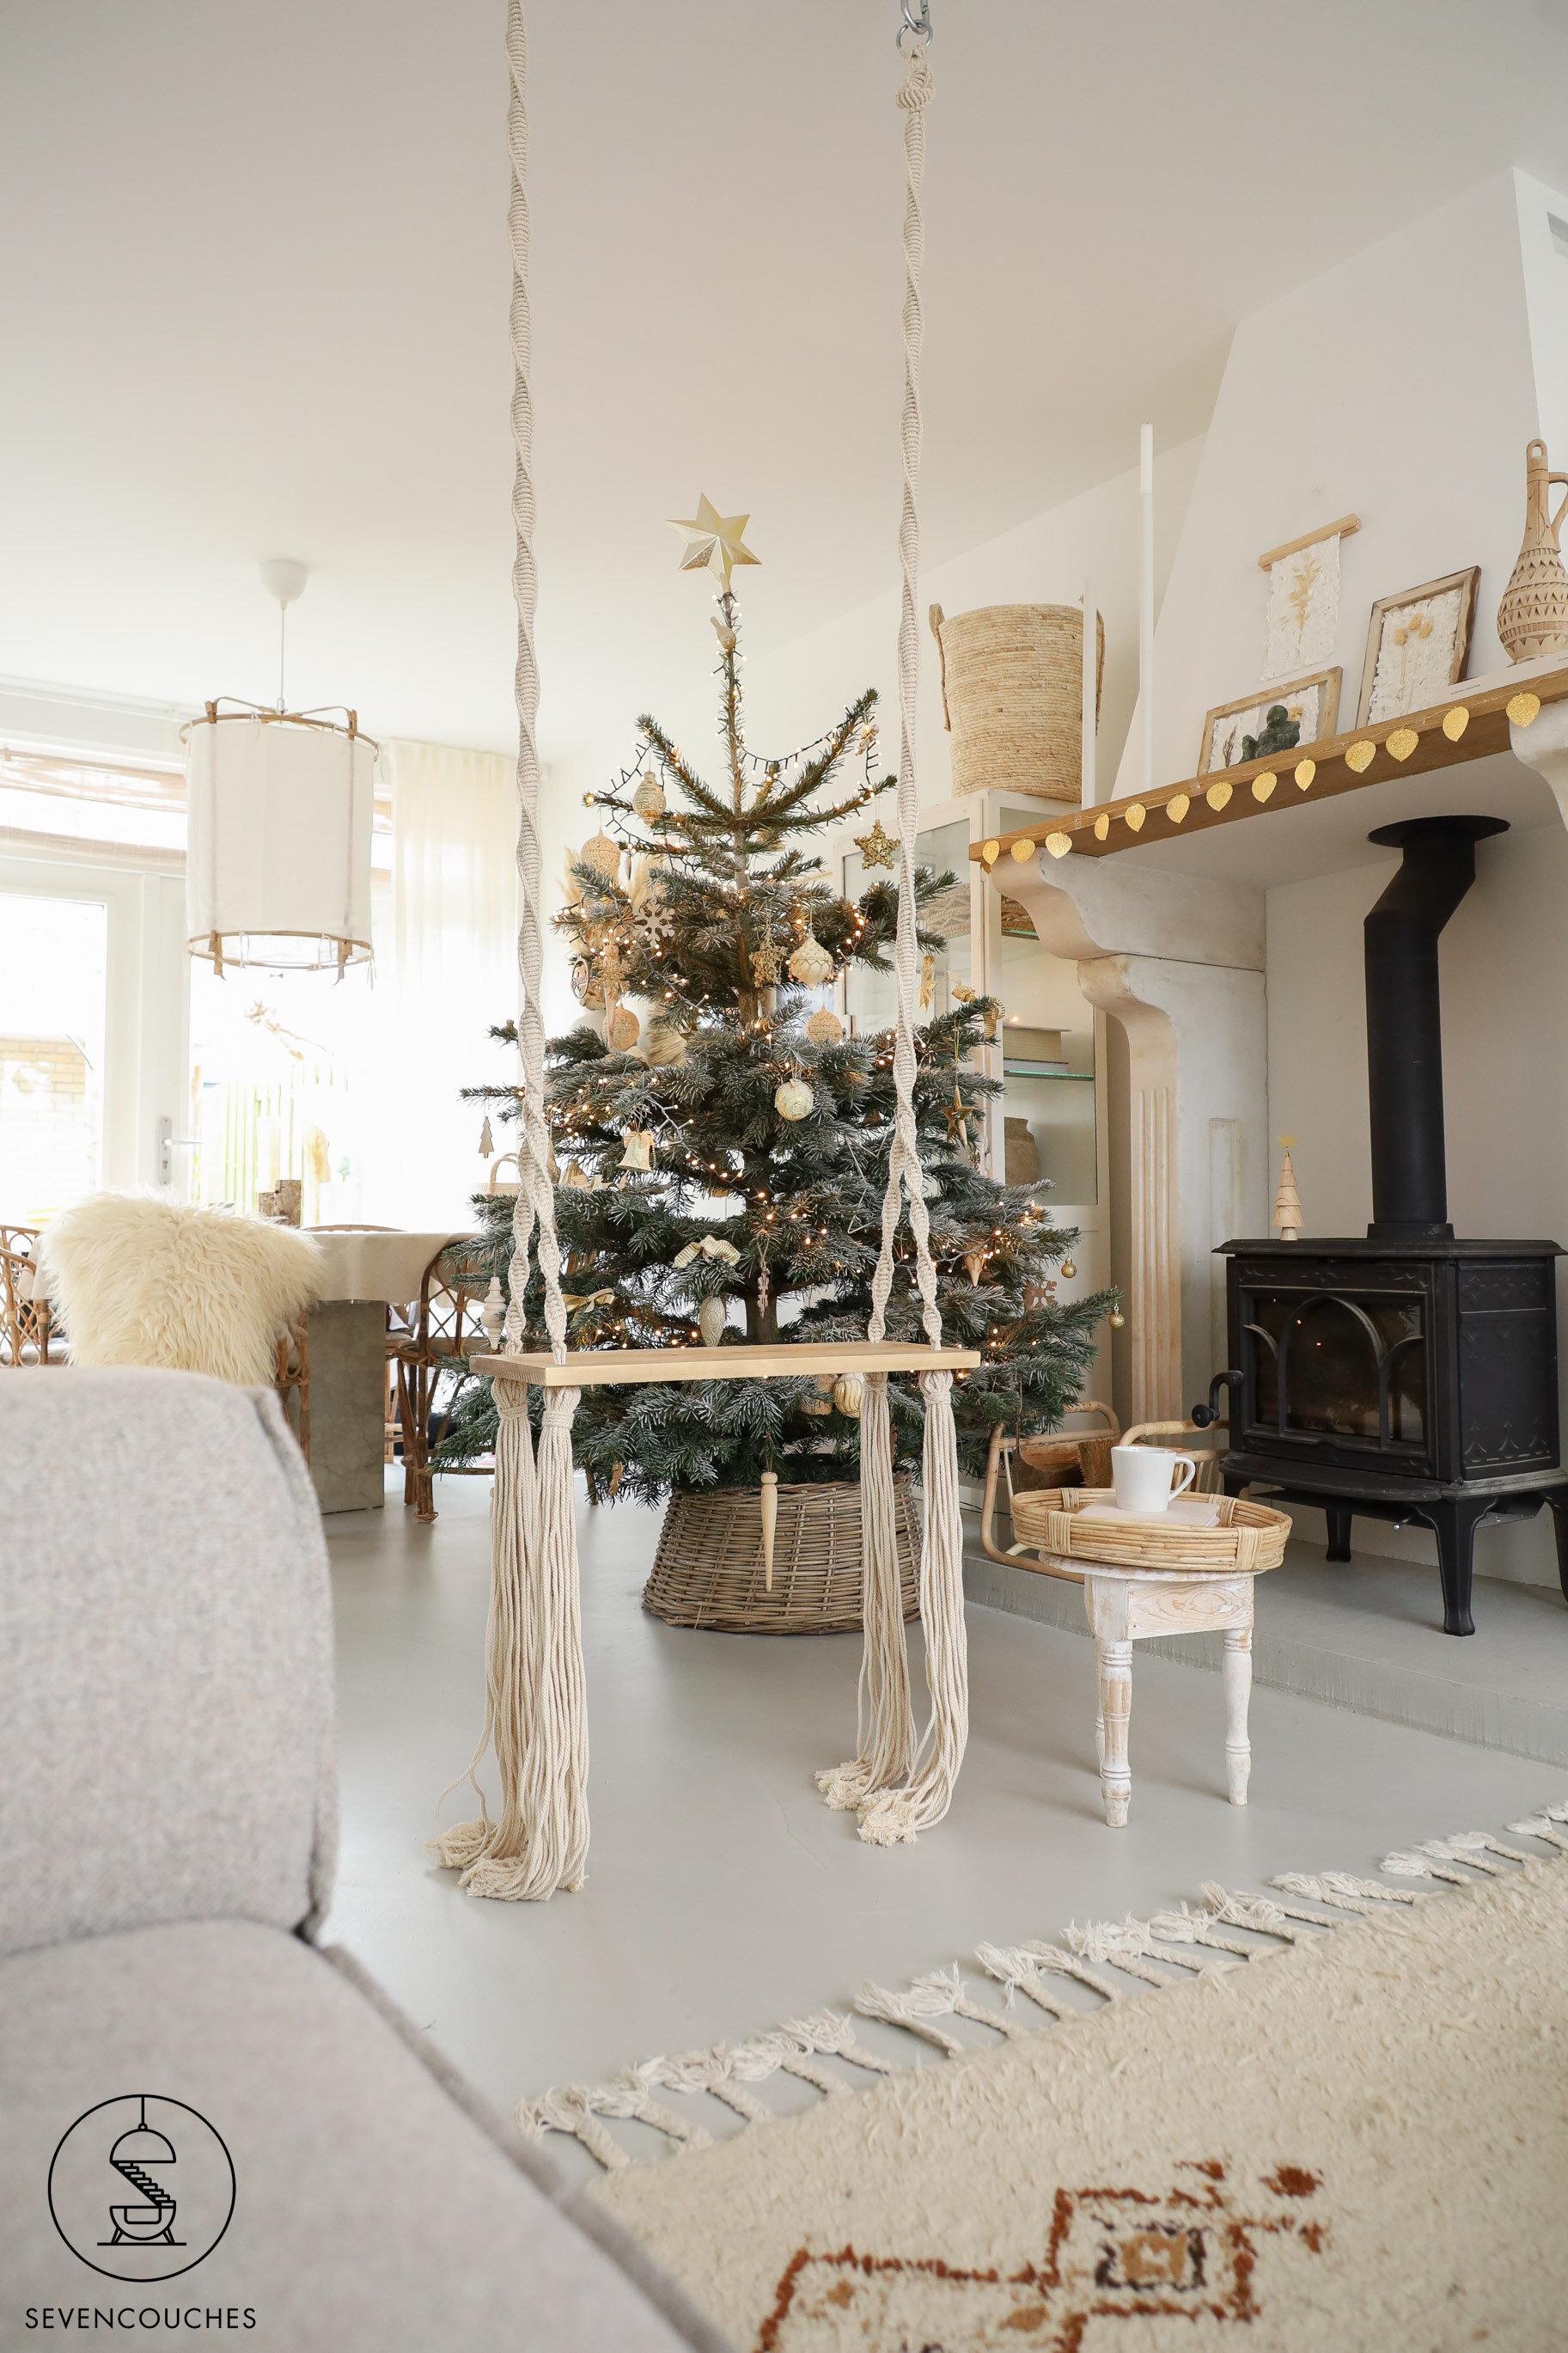 strijd Omleiding Andrew Halliday Nordmann voor een piek: mijn ervaring met de IKEA-kerstboom — sevencouches